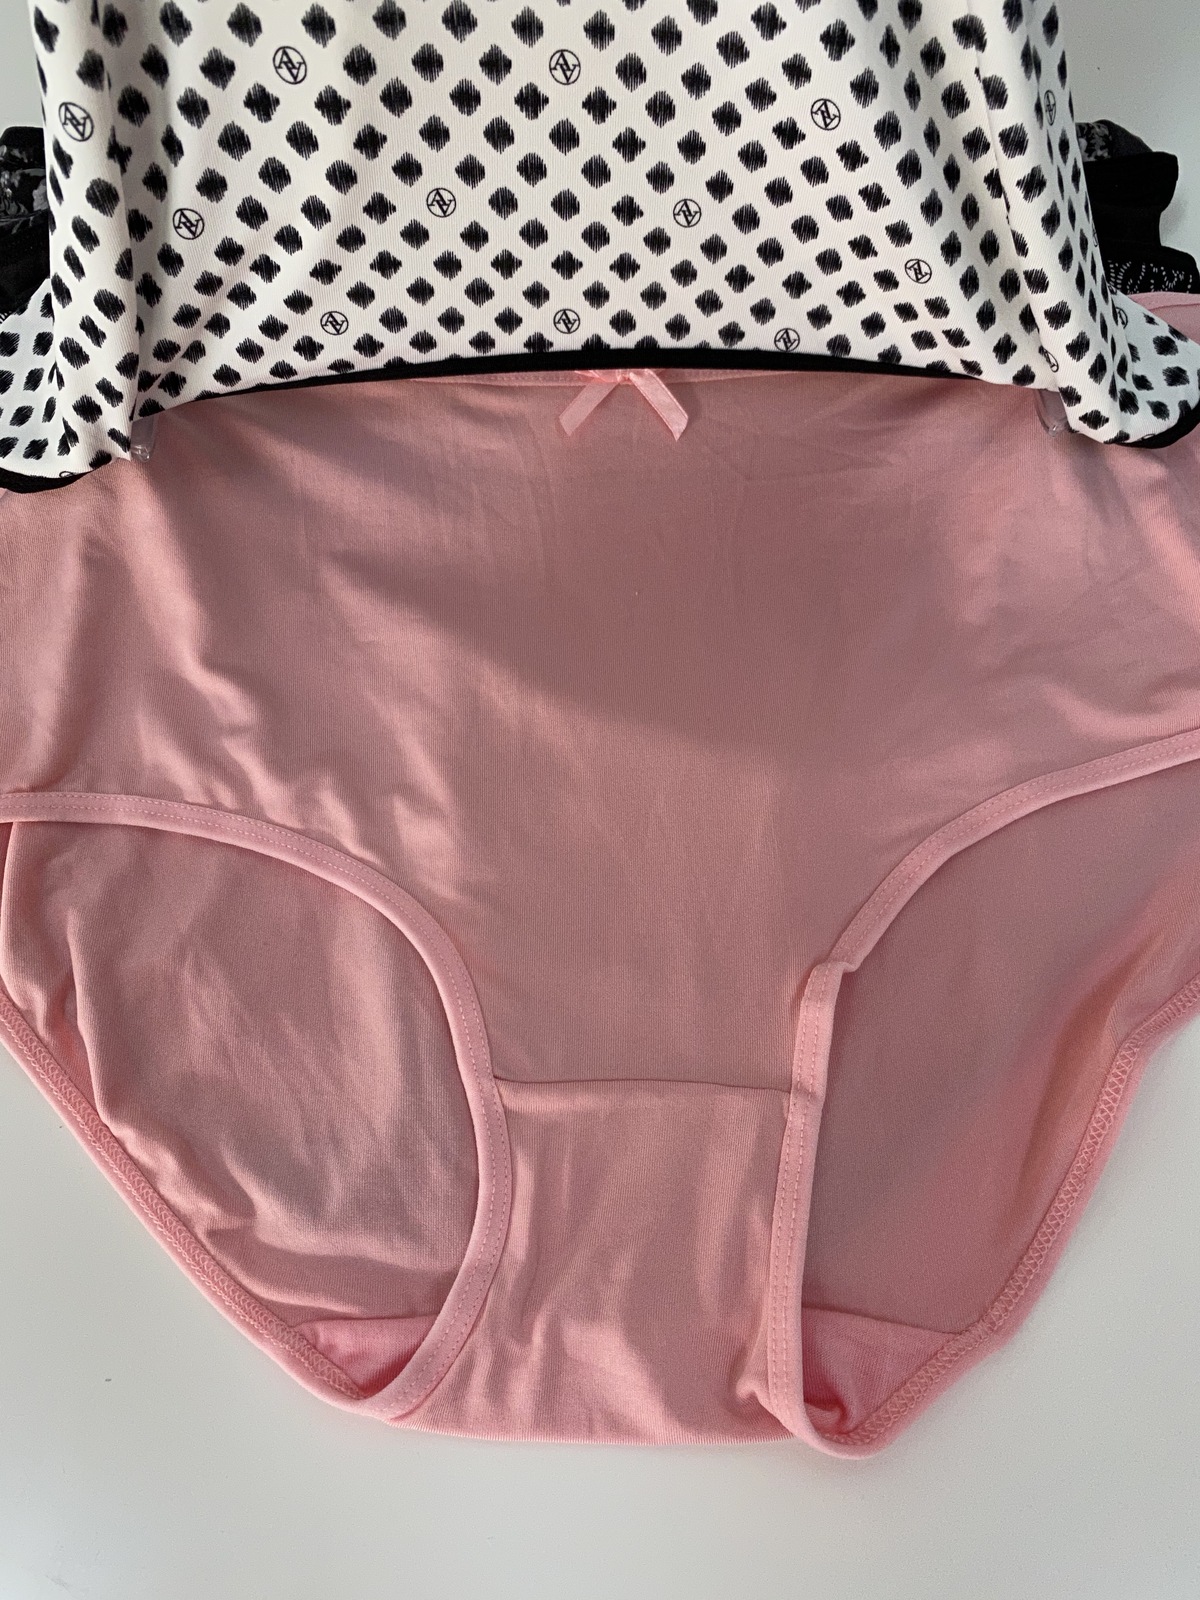 Adrienne Vittadini Everyday Panties Briefs 2X - Panties